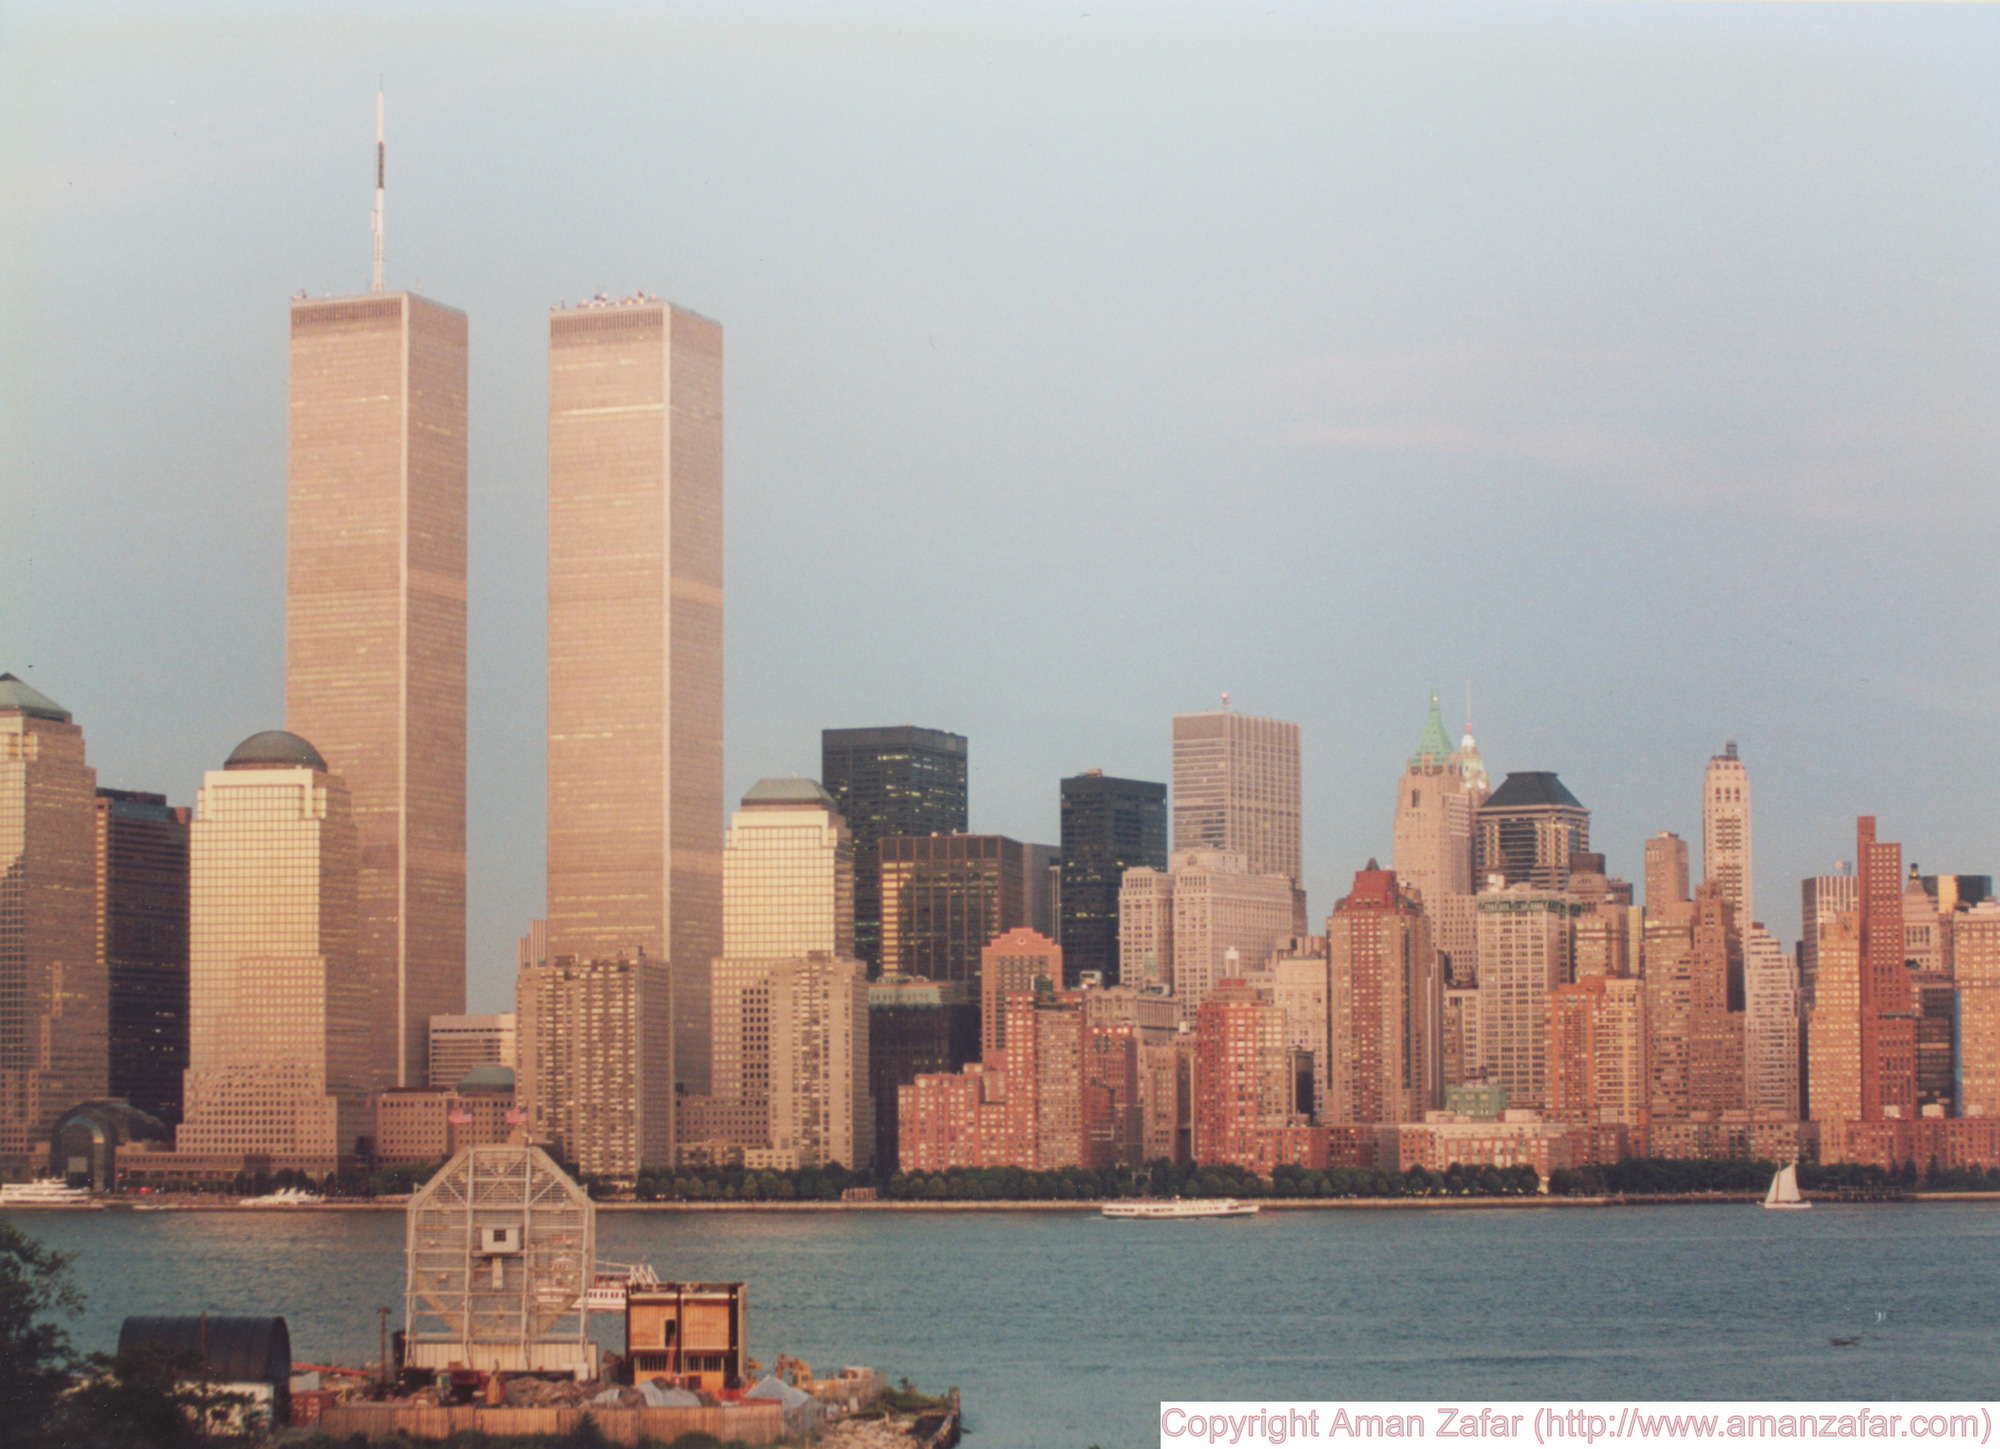 Khoảnh khắc yên bình của Trung tâm Thương mại Thế giới trước vụ khủng bố 11/9 nằm lại trong ký ức của người Mỹ - Ảnh 1.